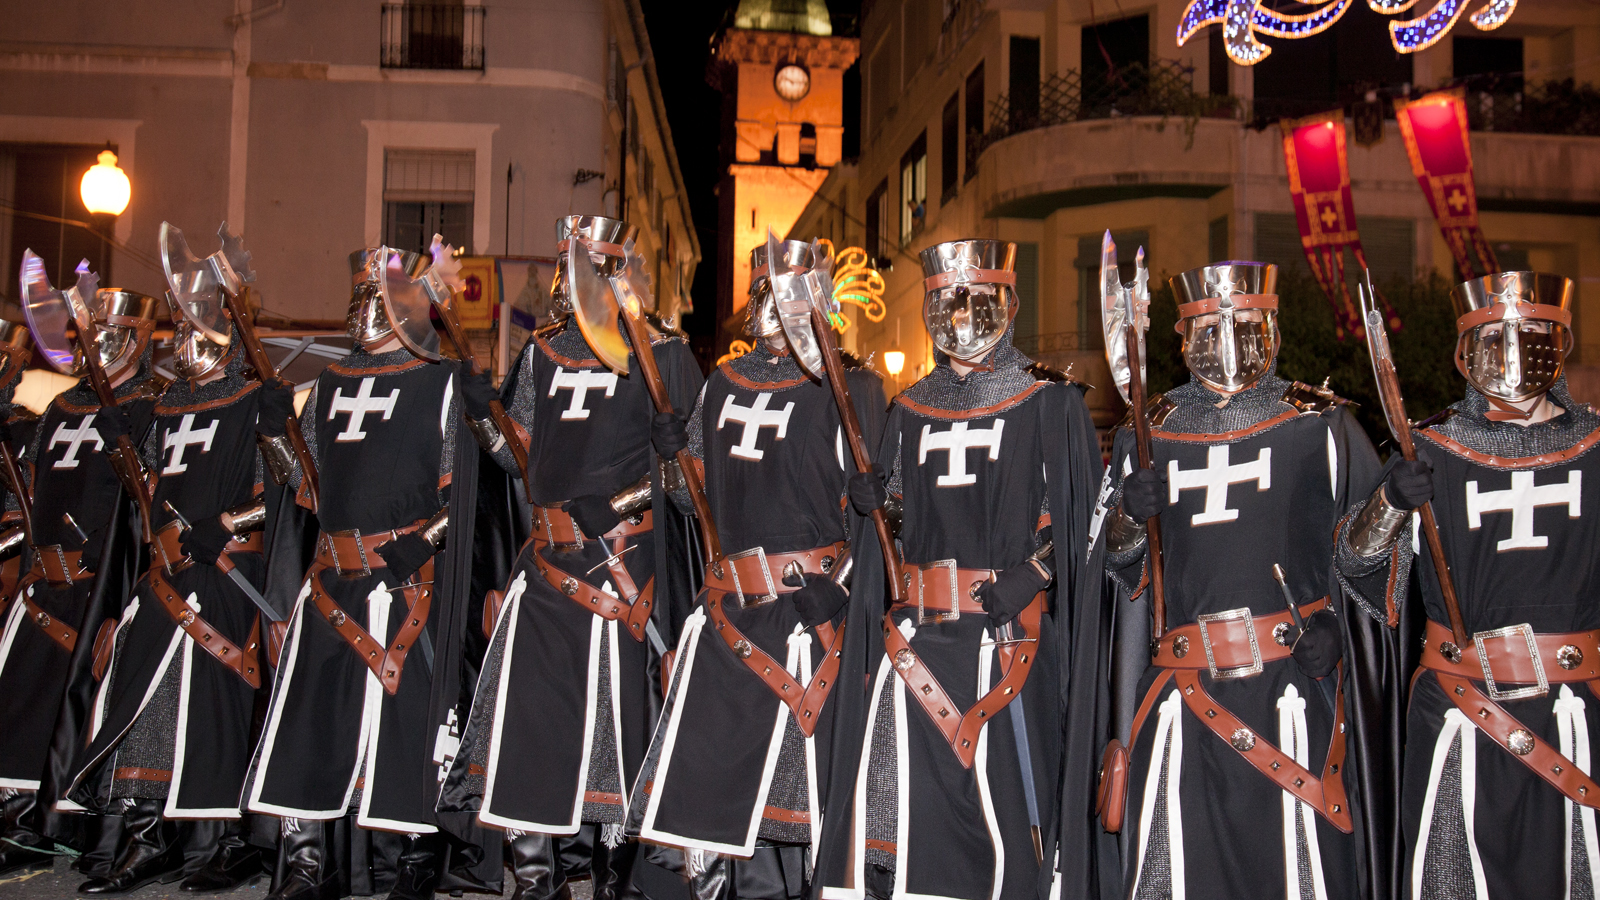 Fiestas de Moros y Cristianos festival in Villena